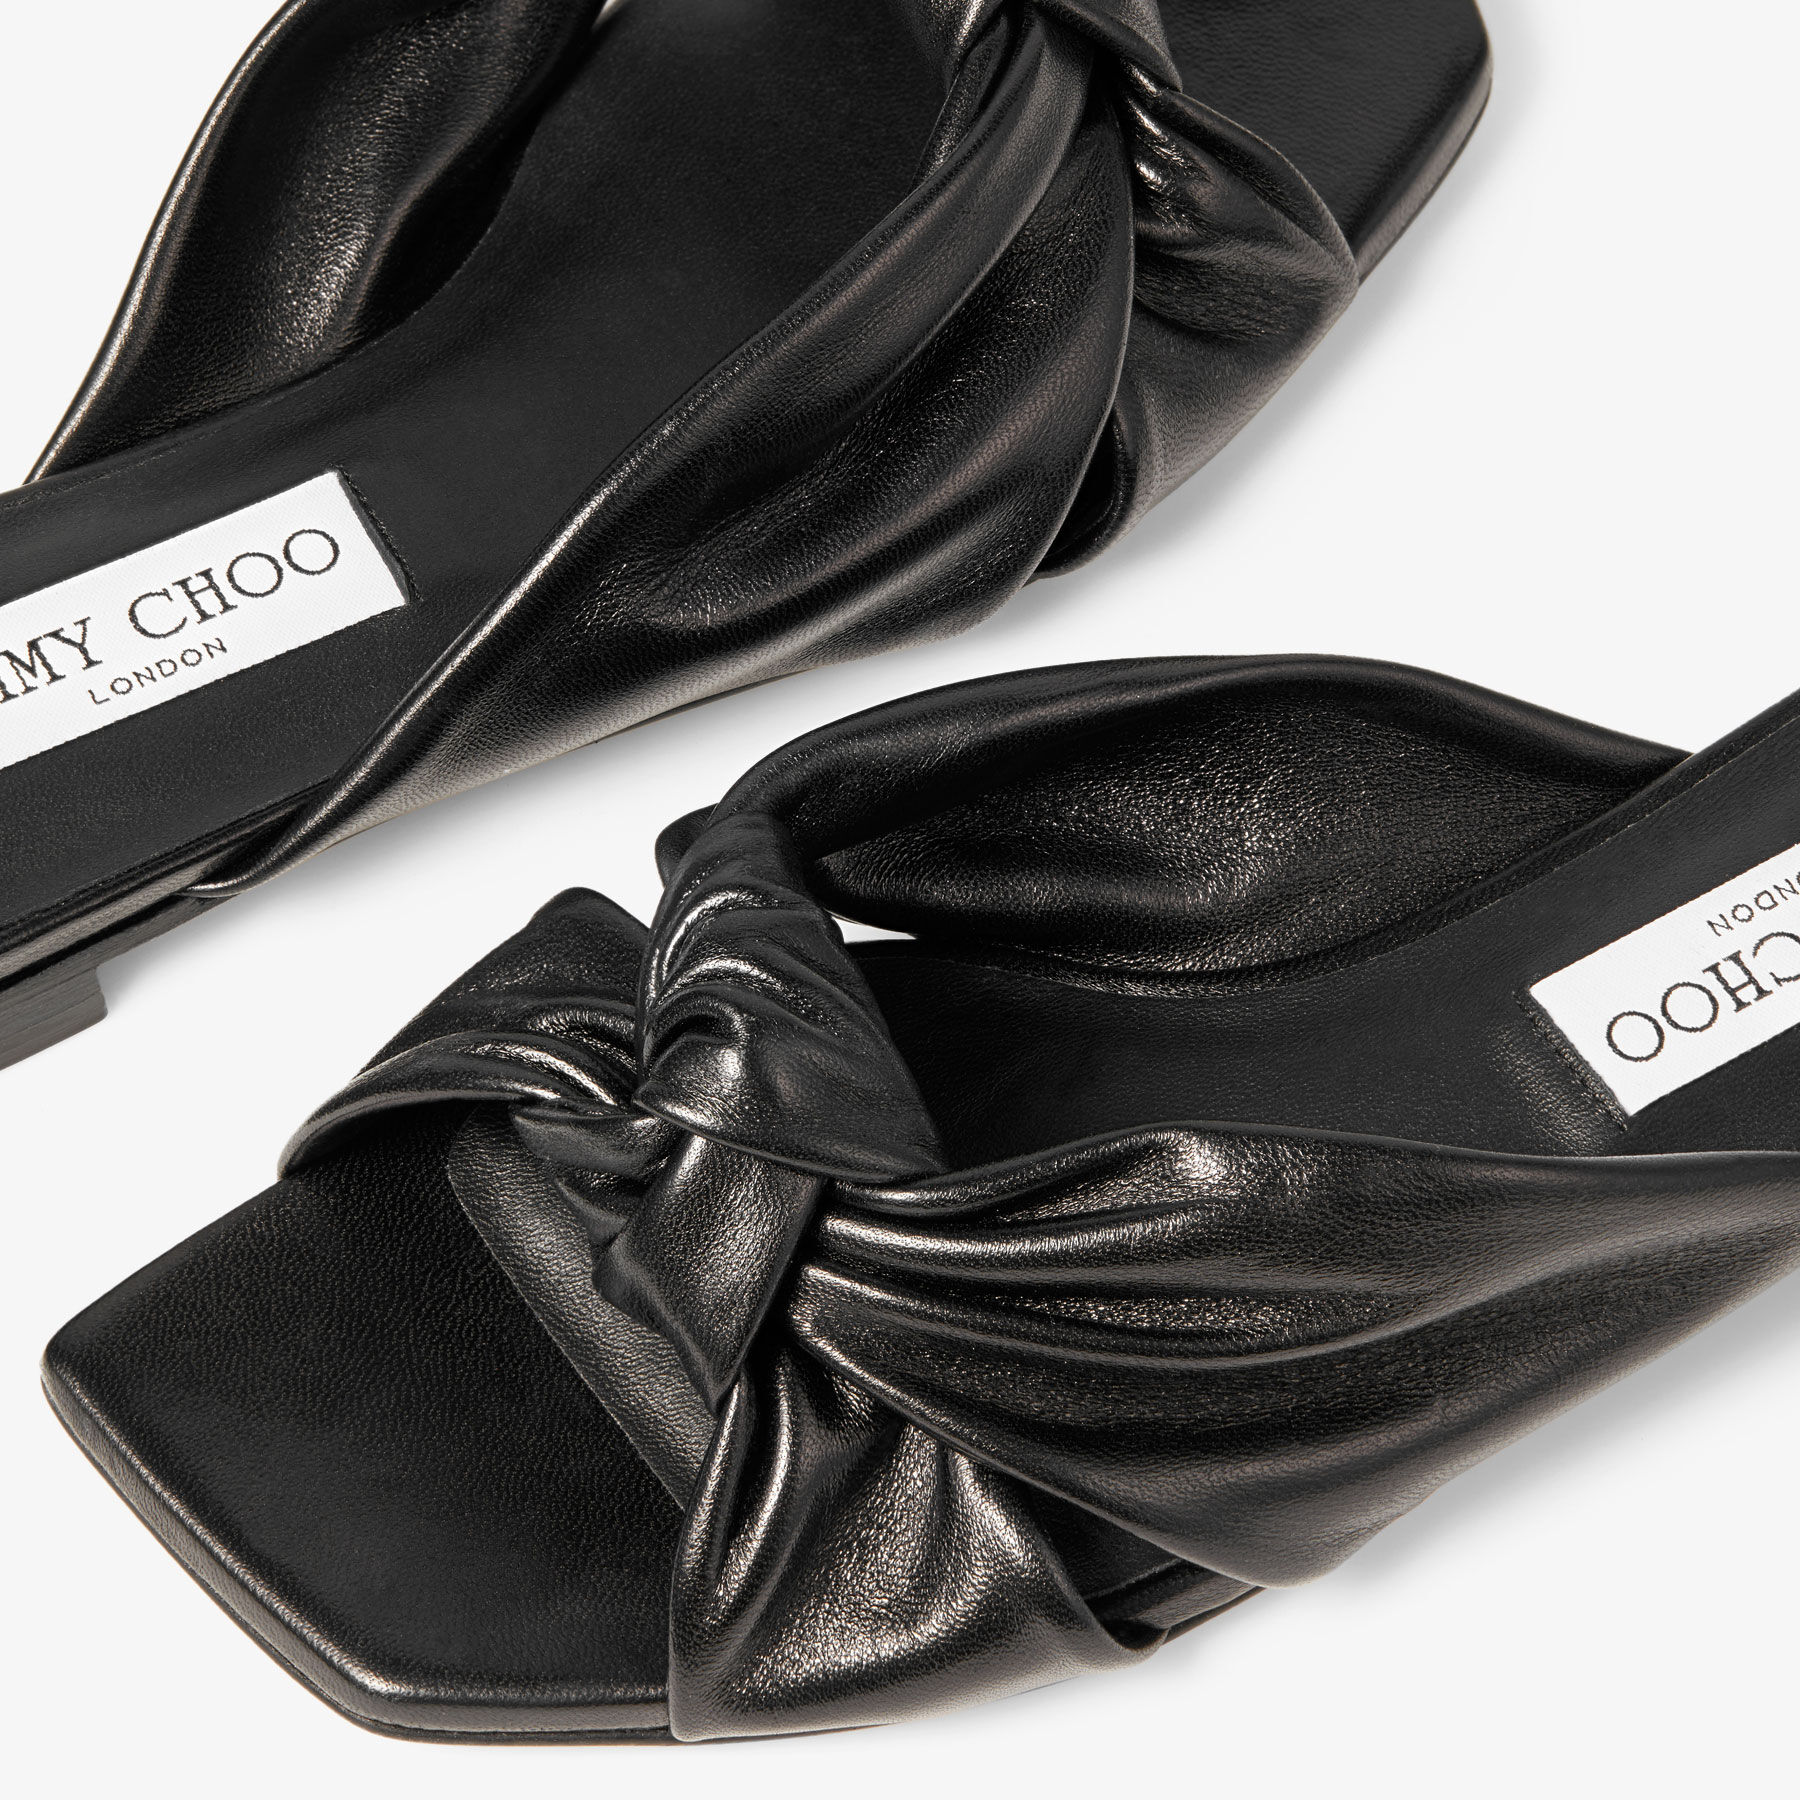 Jimmy Choo SHILOH FLAT | Footwear design women, Jimmy choo shoes, Jimmy choo